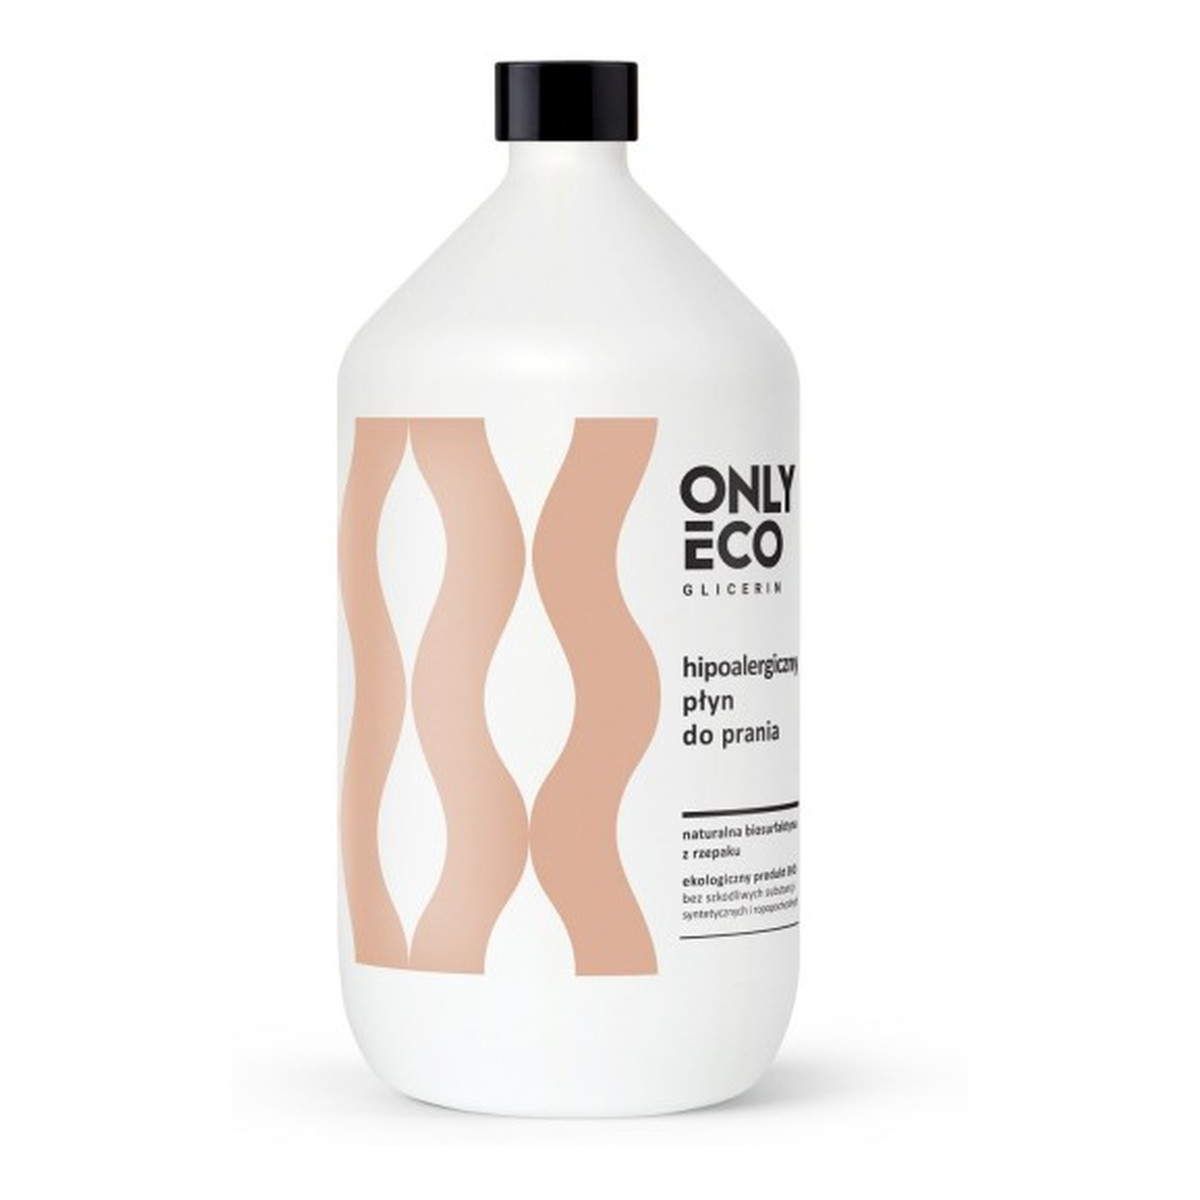 OnlyEco Glicerin ekologiczny hipoalergiczny płyn do prania 1000ml